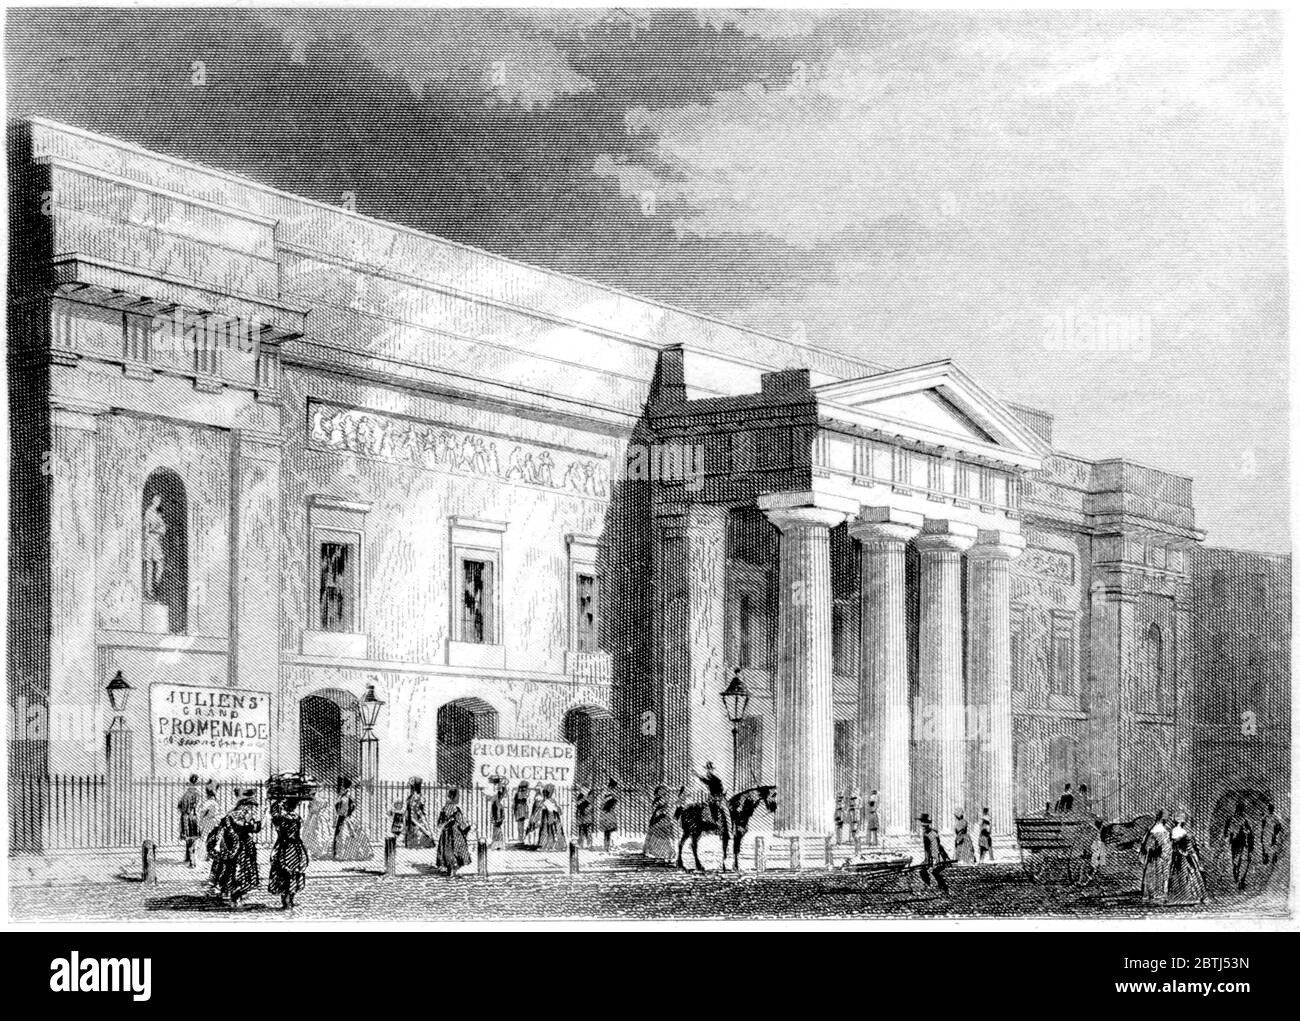 Gravur des Covent Garden Theatre London gescannt in hoher Auflösung aus einem Buch gedruckt im Jahr 1851. Dieses Bild ist frei von jegl. Copyright. Stockfoto